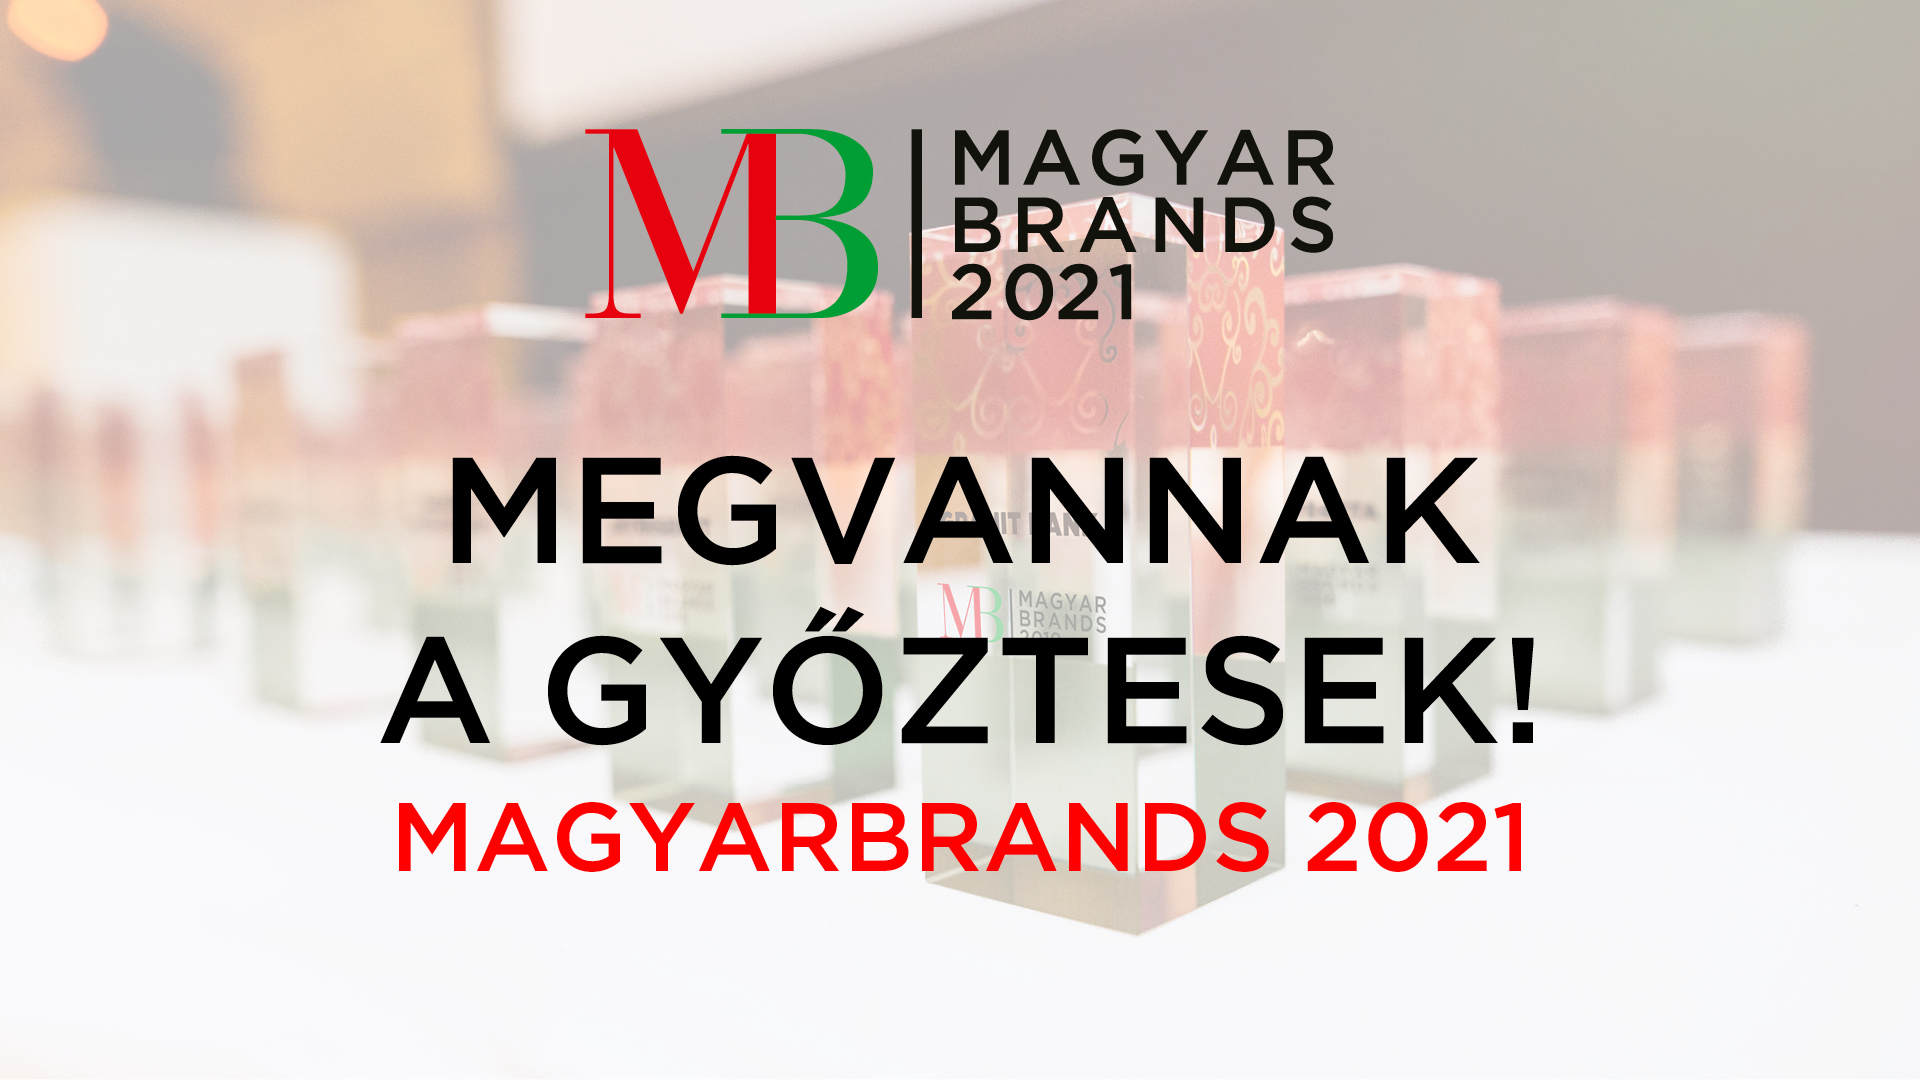 Neked melyik a kedvenc magyar márkád?